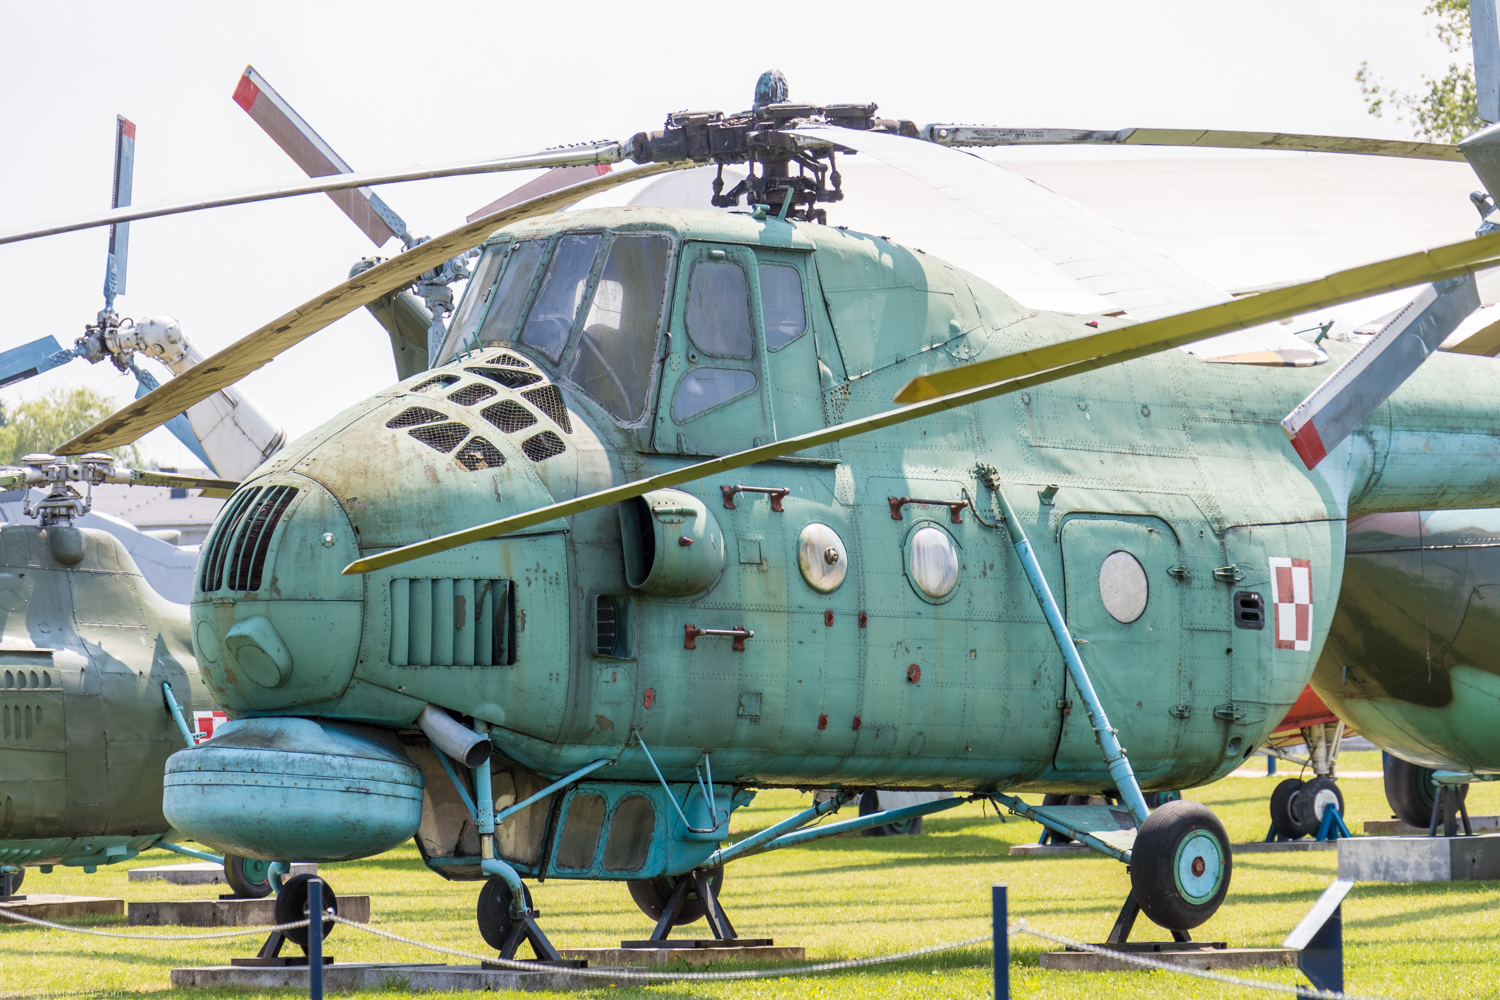 Museum Sil Powietrznych в Deblin: противолодочный вертолет Ми-4МЭ